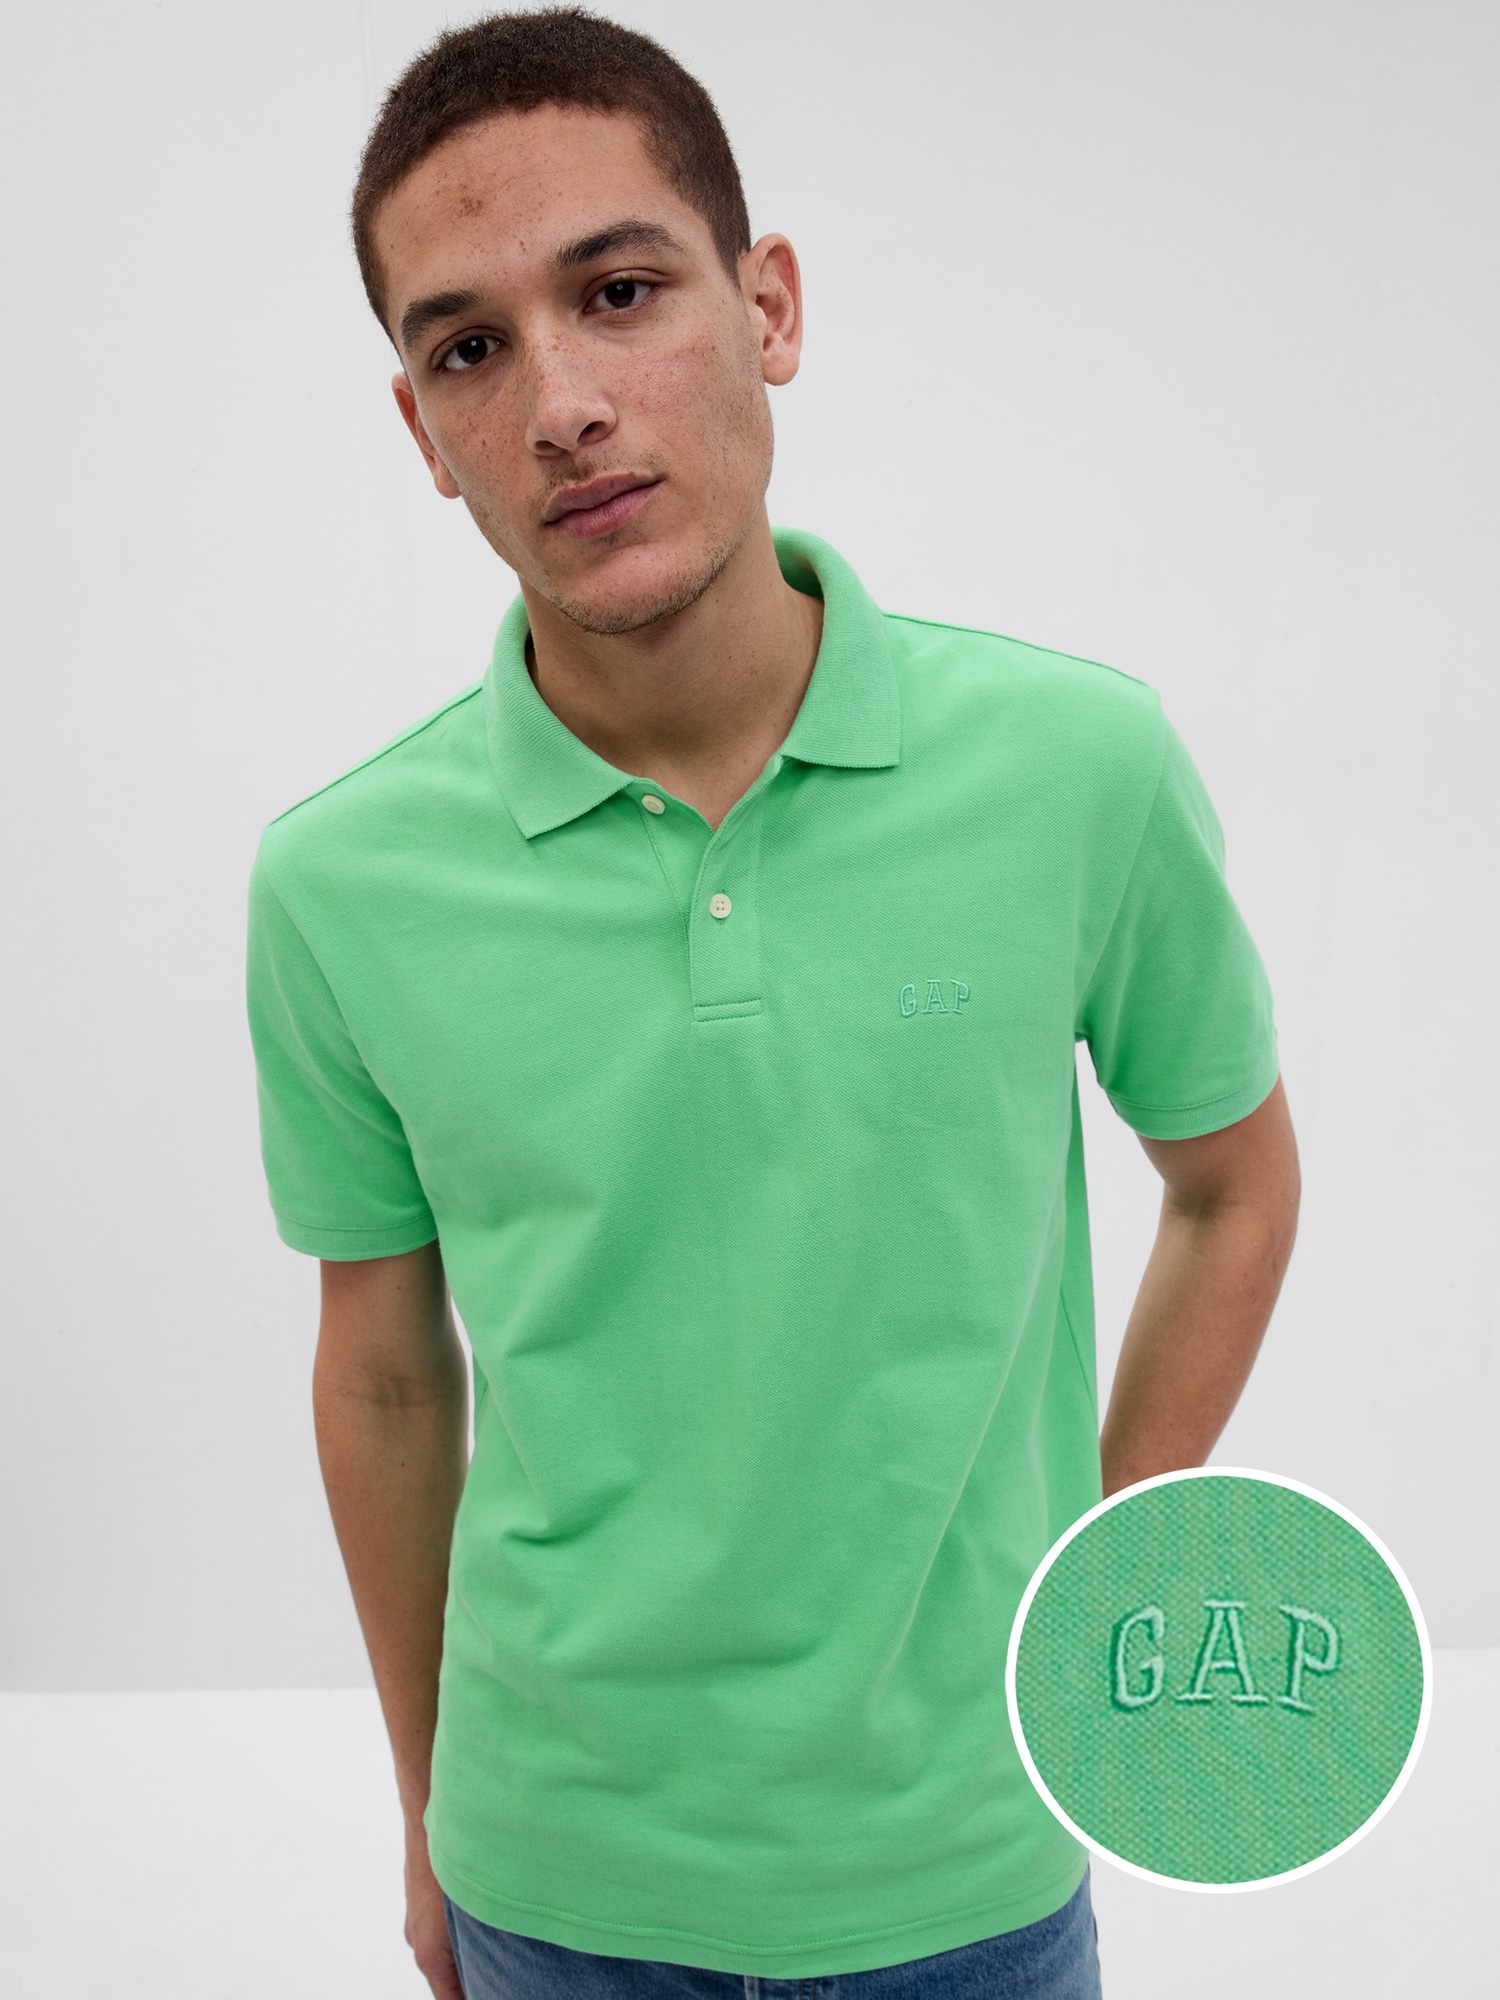 メンズポロシャツ GAP - 通販 - guianegro.com.br